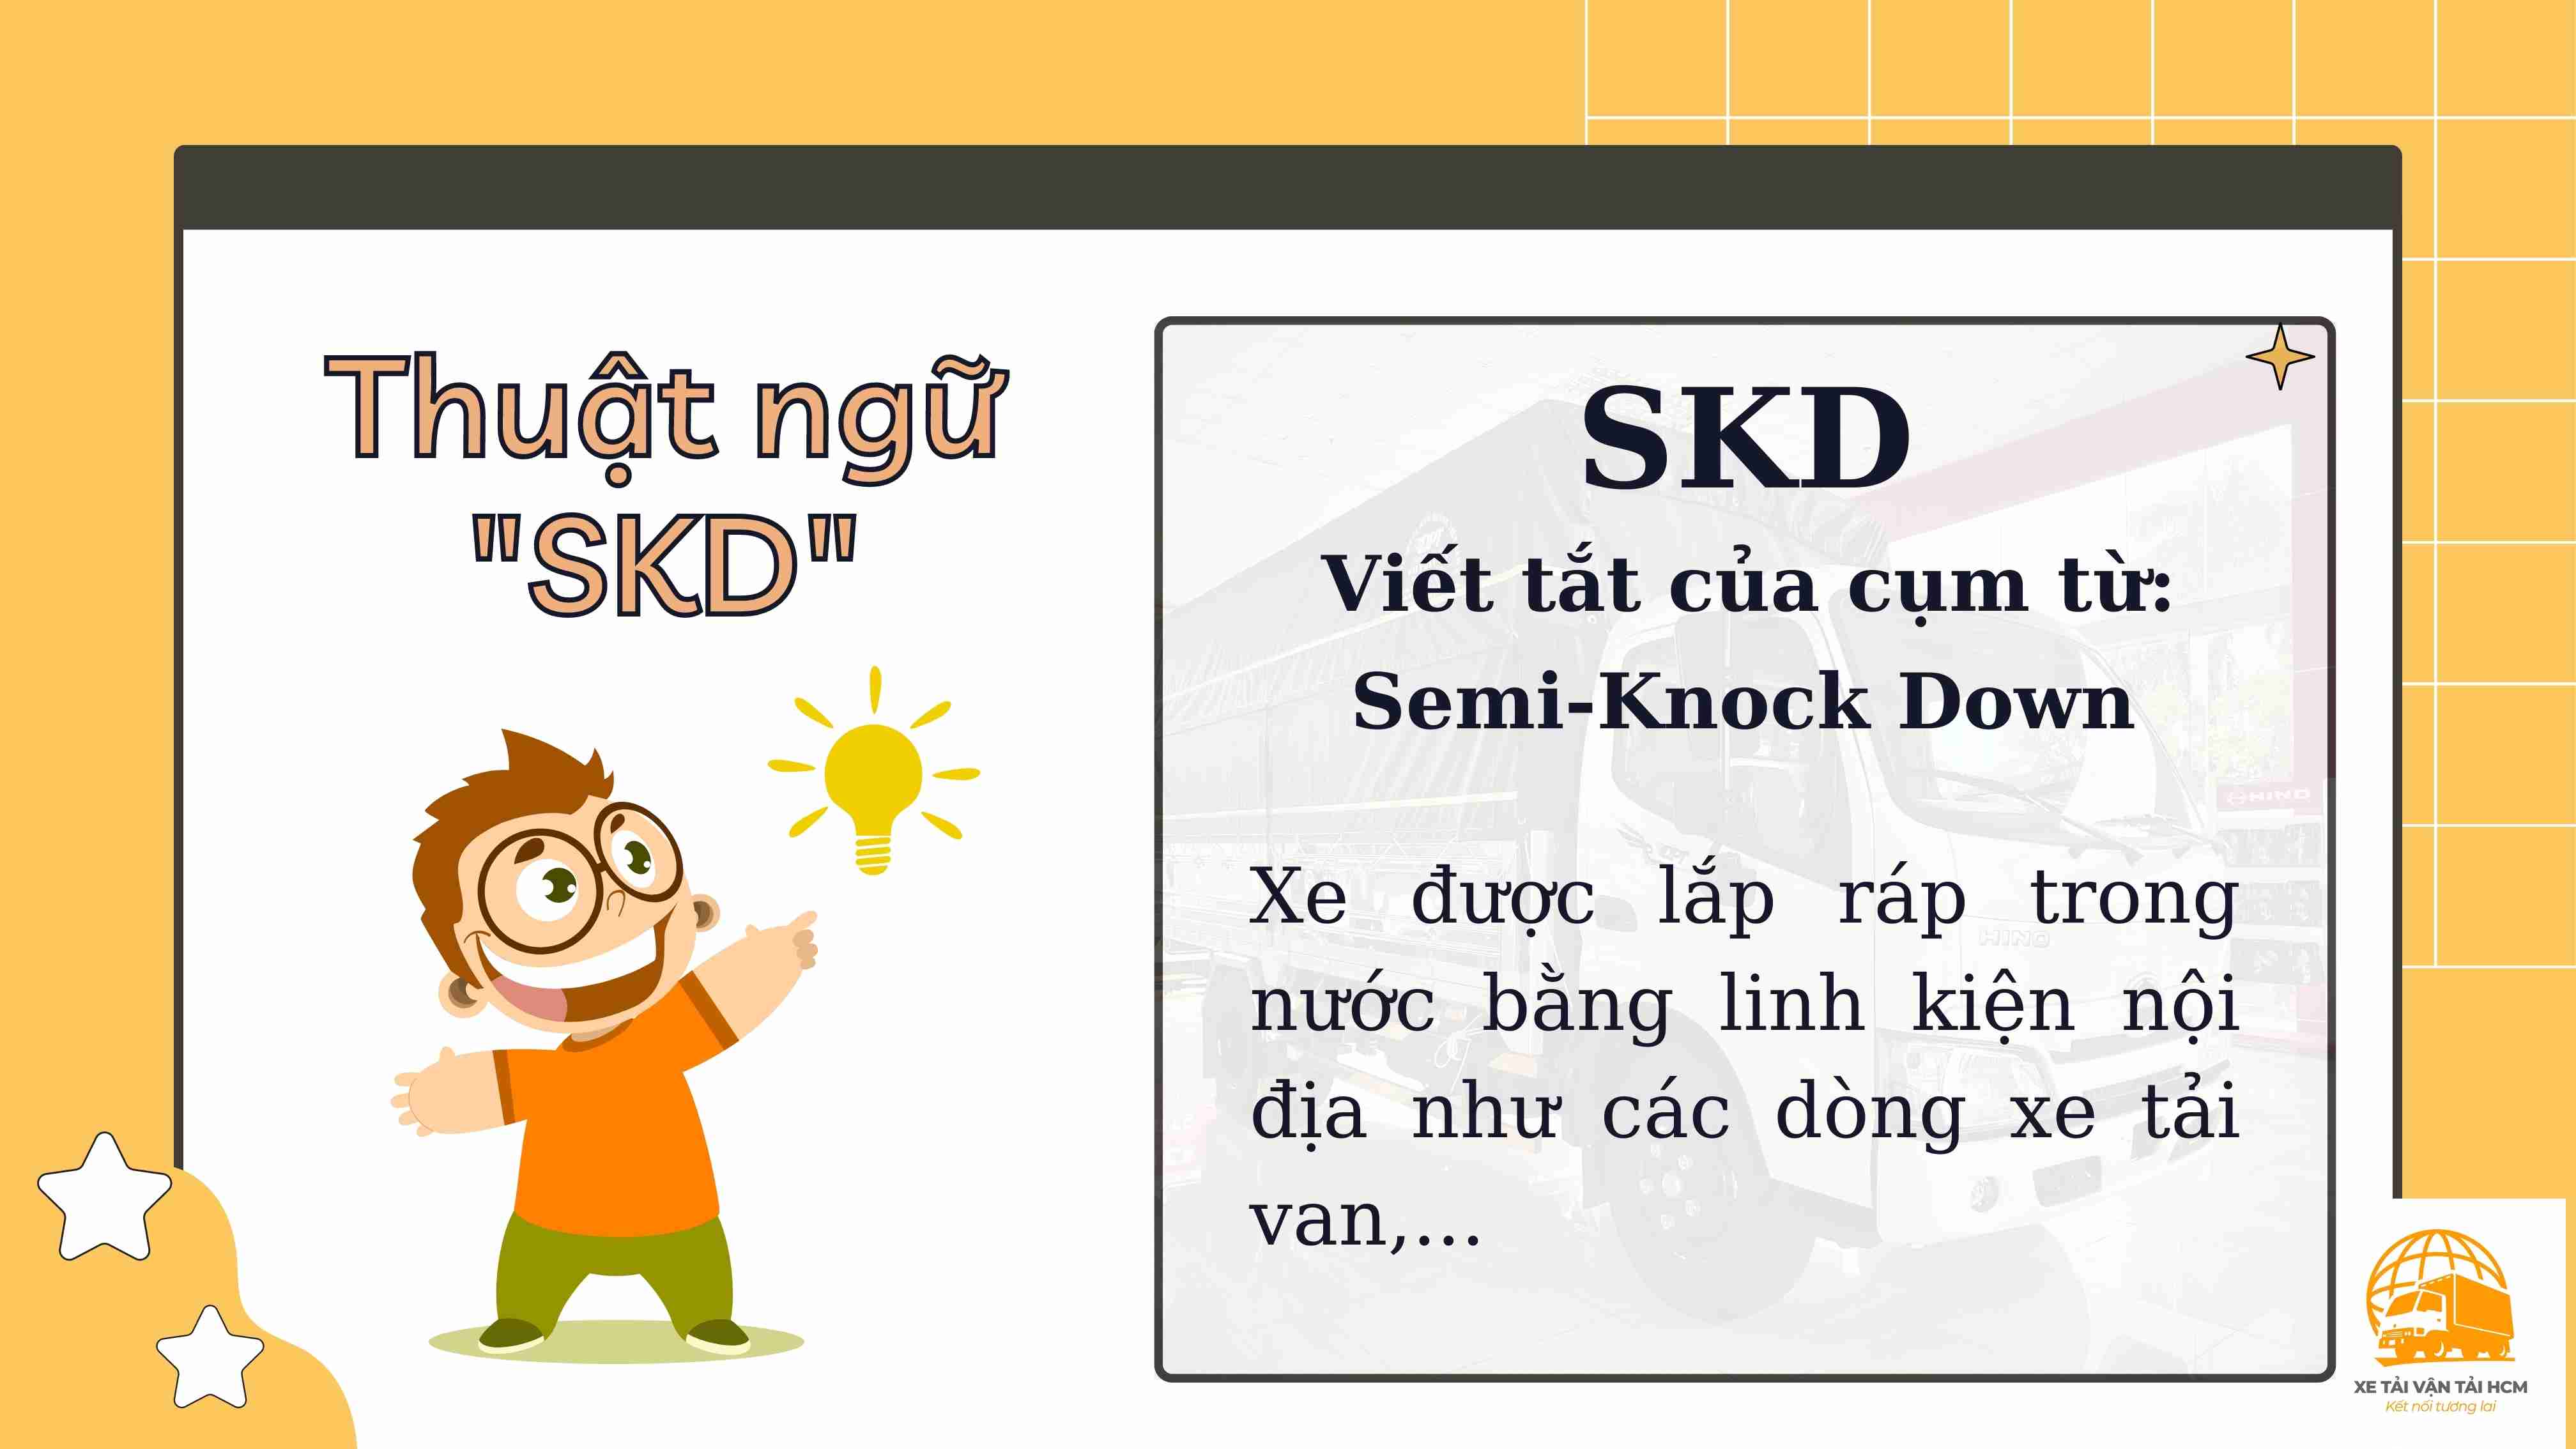 Thuật ngữ SKD là gì?